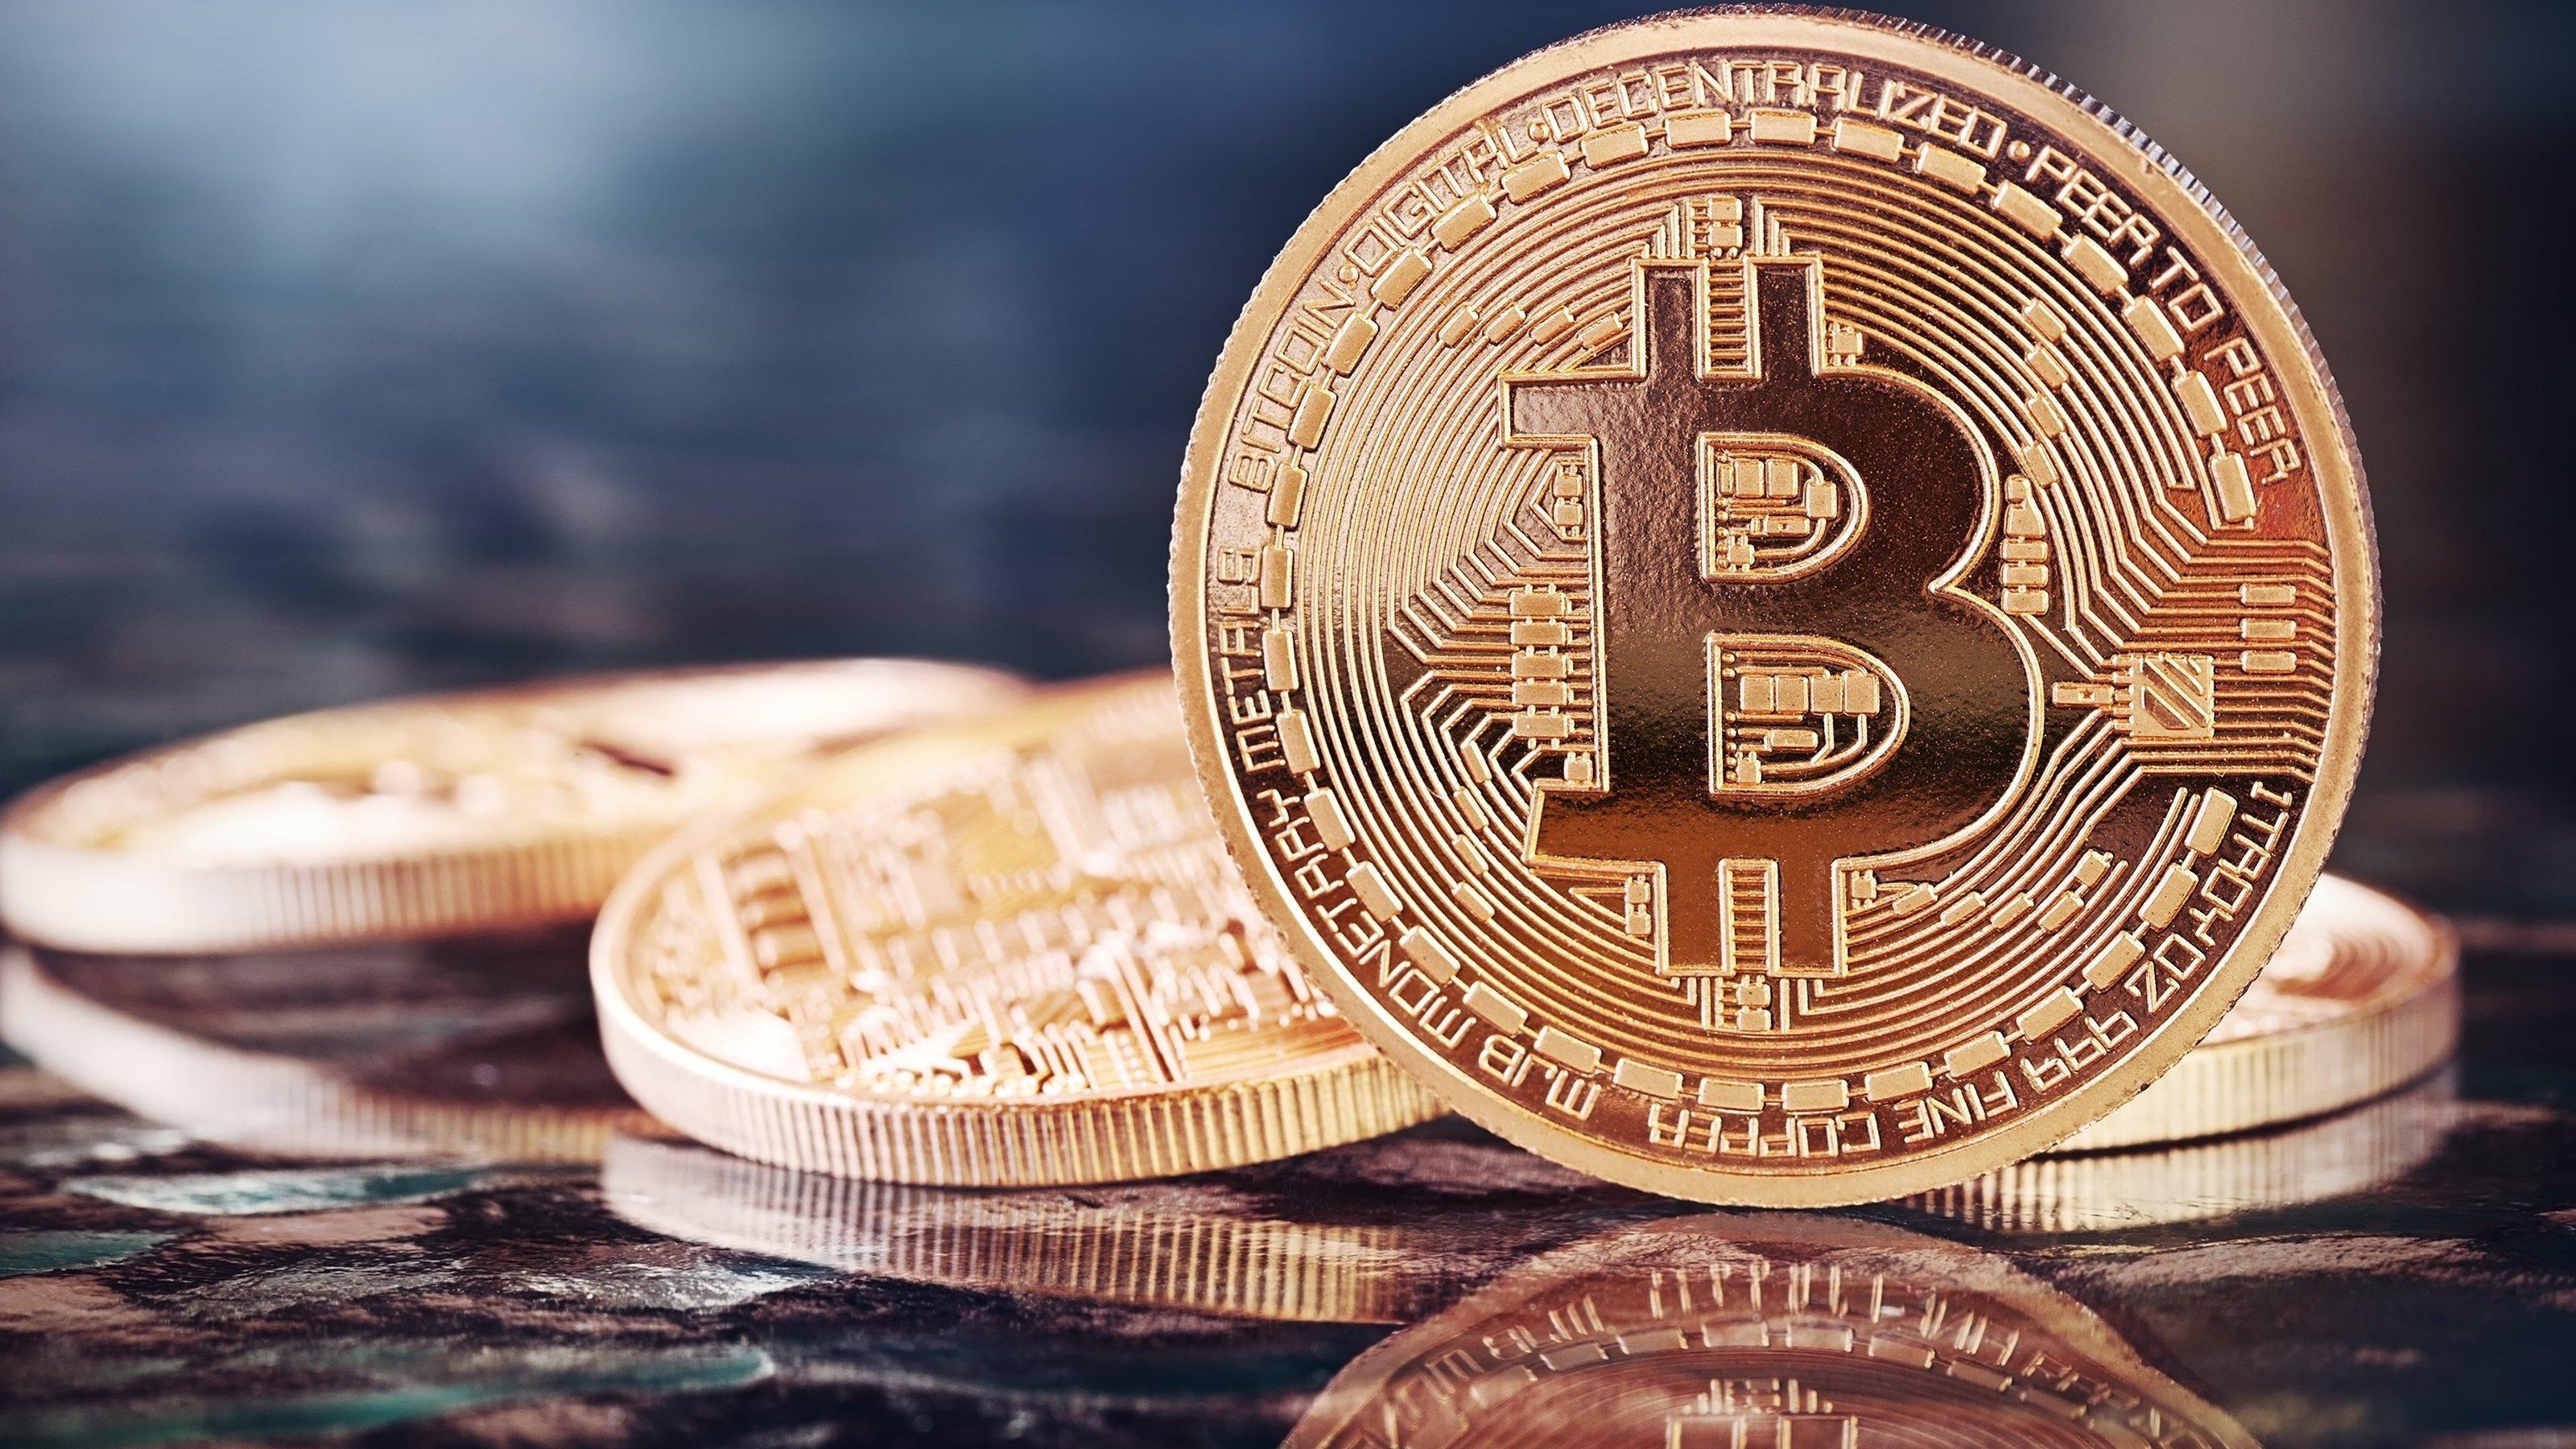 Mange har ennå stor tro på Bitcoin, til tross for de mange problemene. Foto: Julia Zakharova/Shutterstock.com